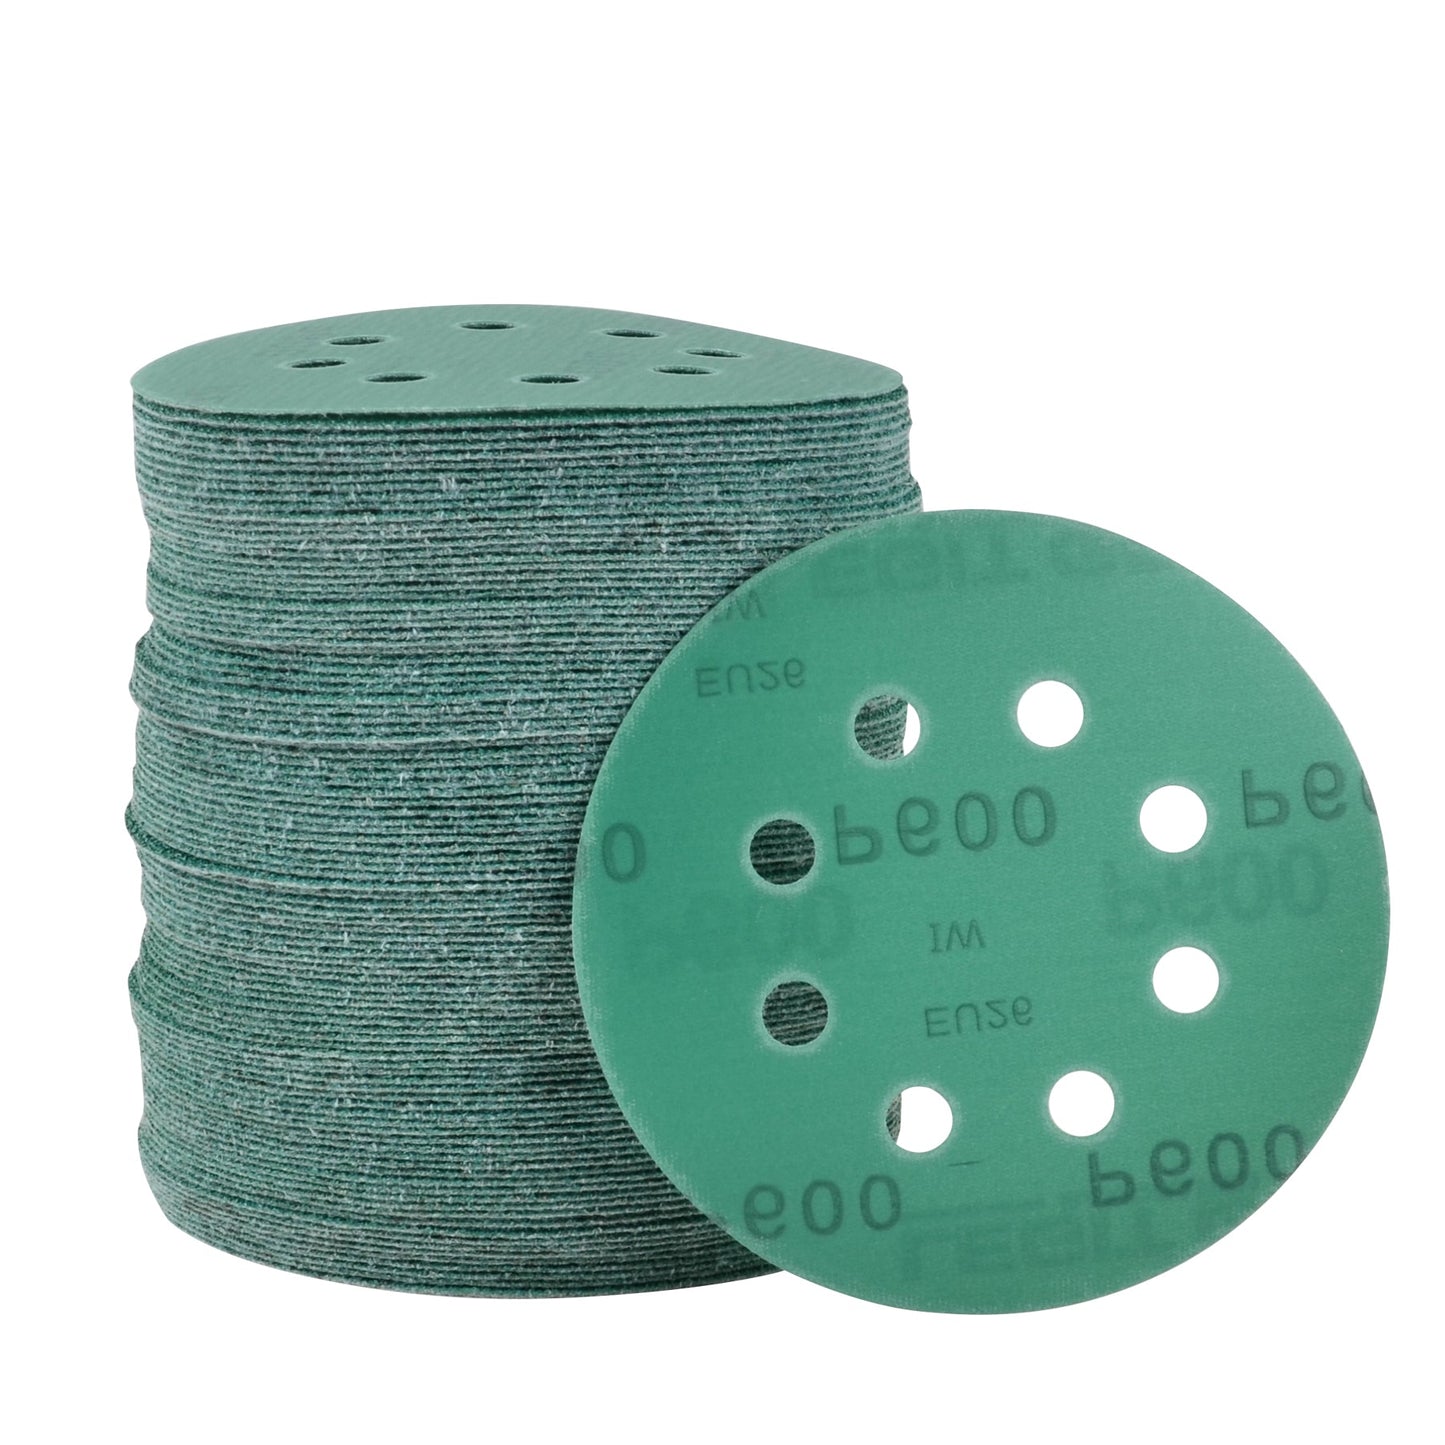 5-Inch 8-Hole Sanding Discs Legit Grit